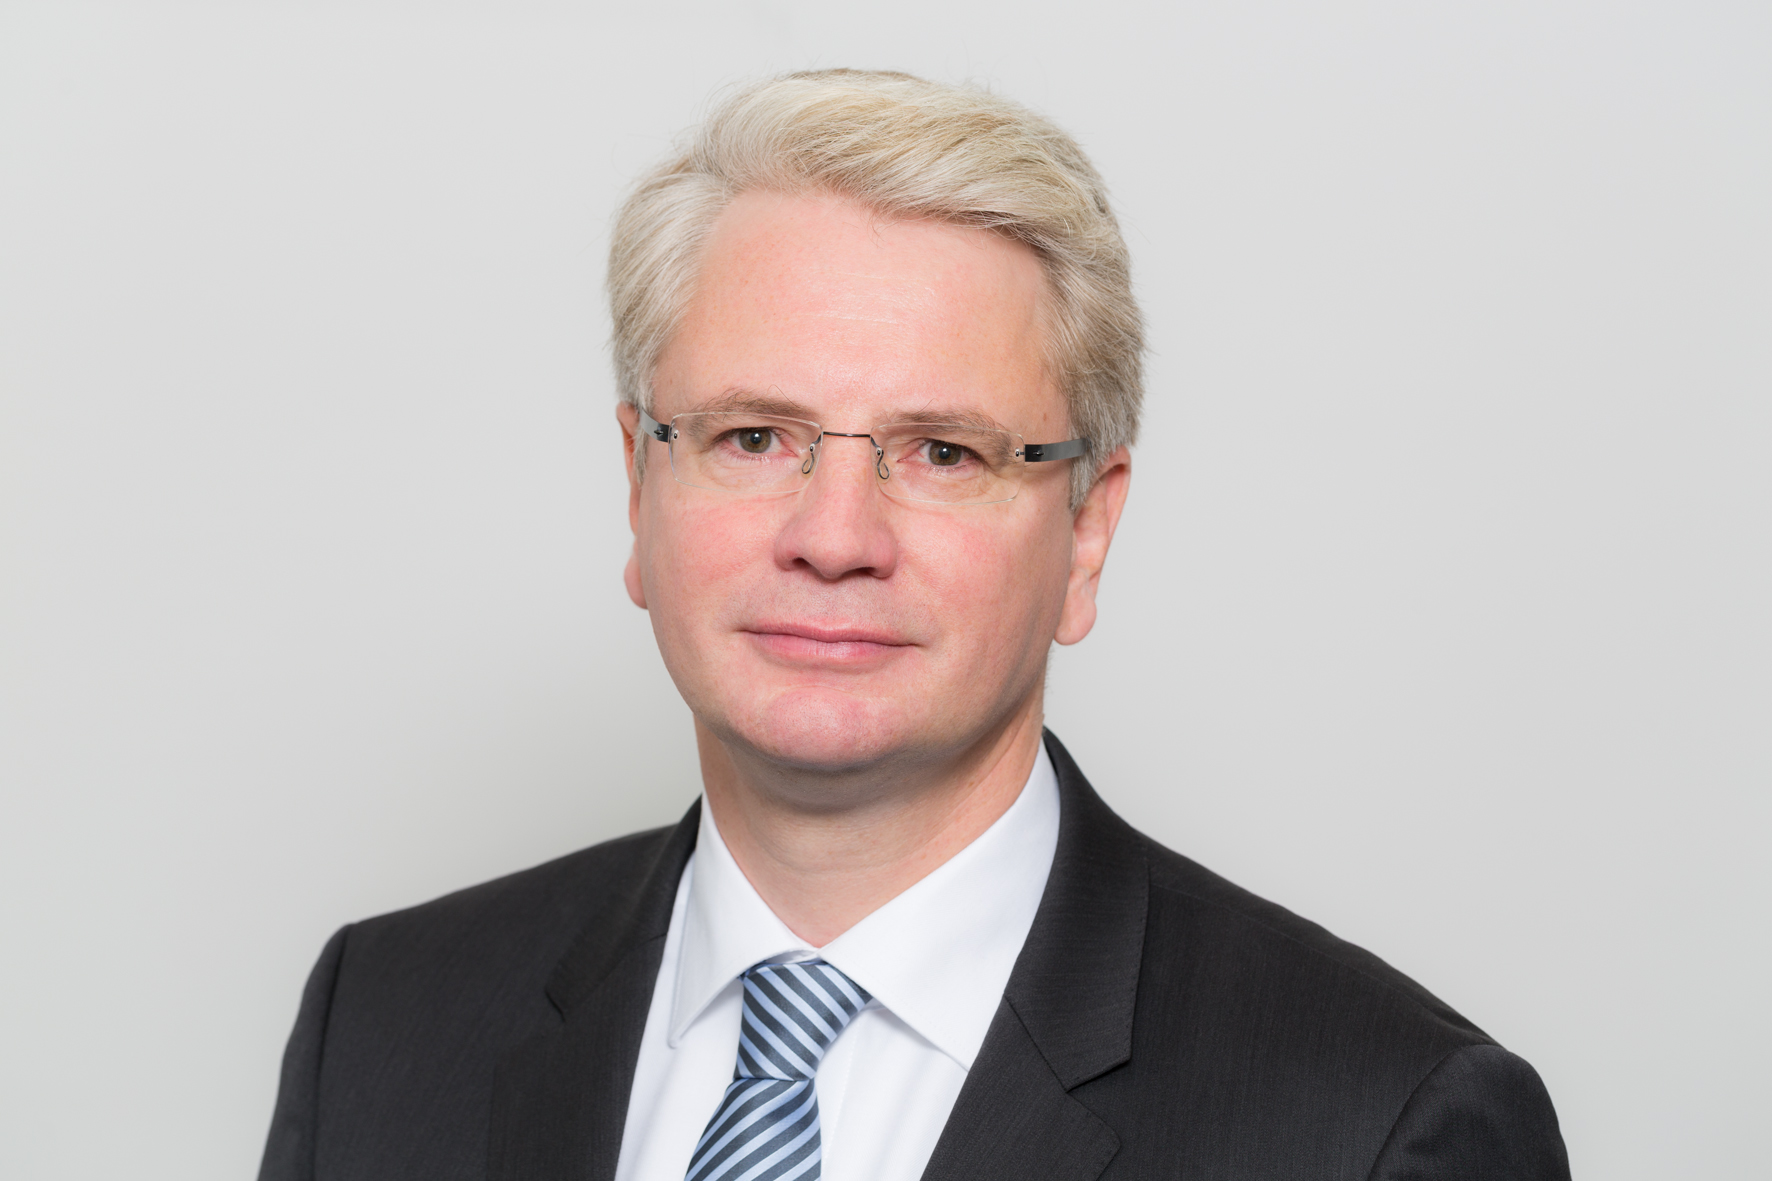 Directeur Reinhard Lüken van VSM: ‘Geen reddingspakket voor de scheepsbouw maar een belangrijke stimulans’. (Foto VSM)